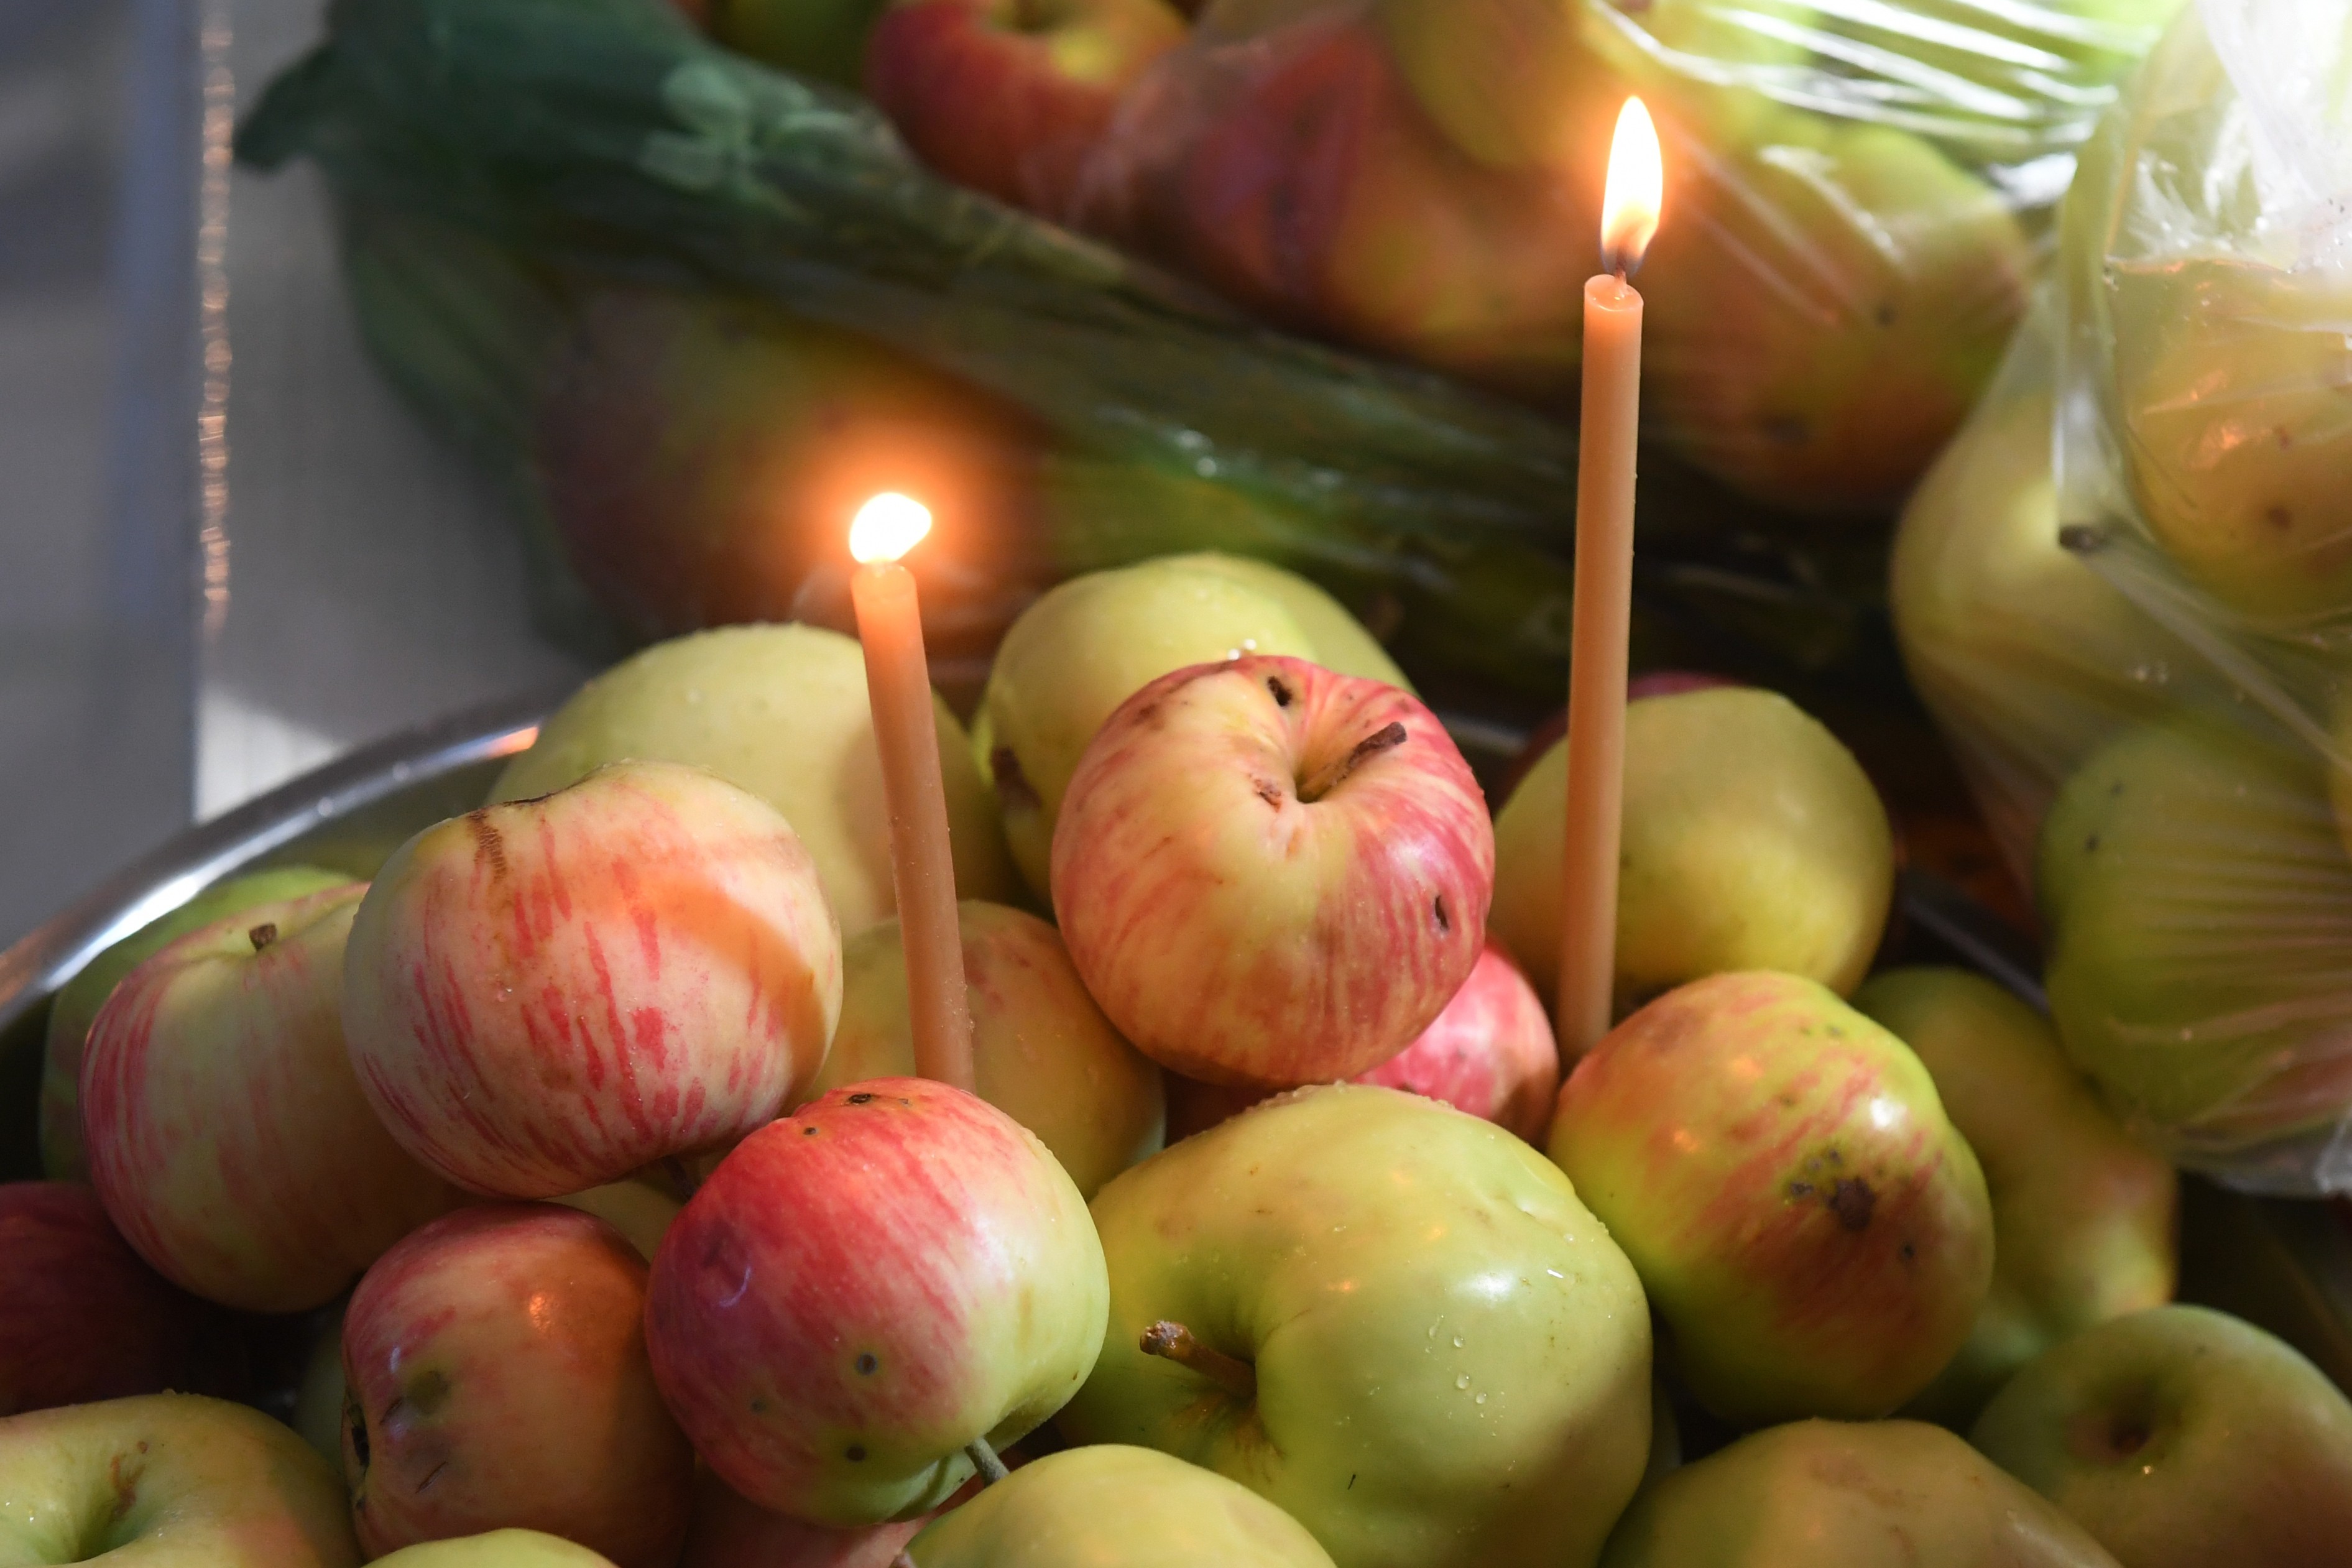 Преображение Господне или Яблочный спас: традиции и смысл праздника